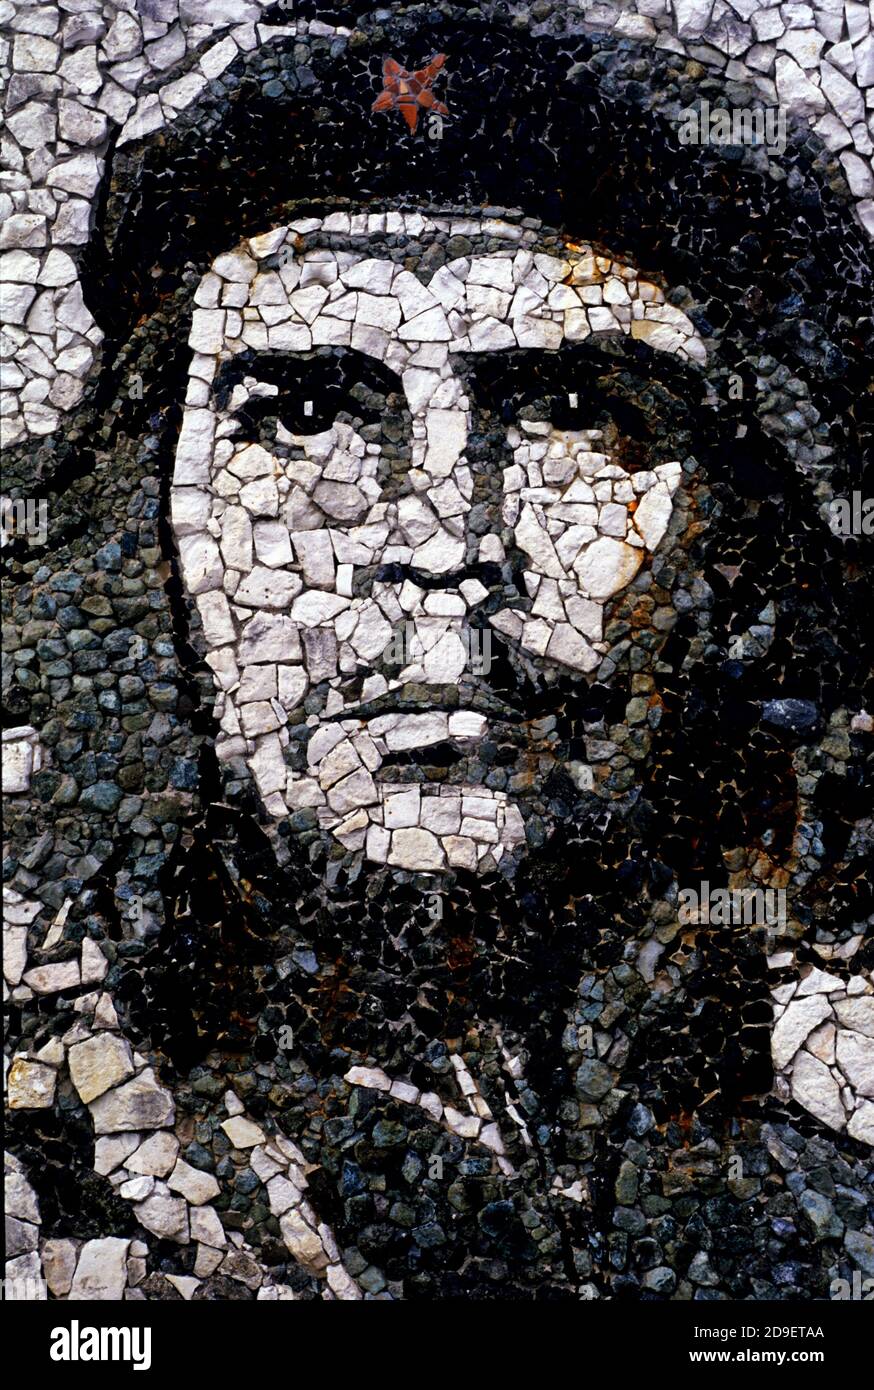 Che Guevara graffiti mosaic in Cuba. Stock Photo